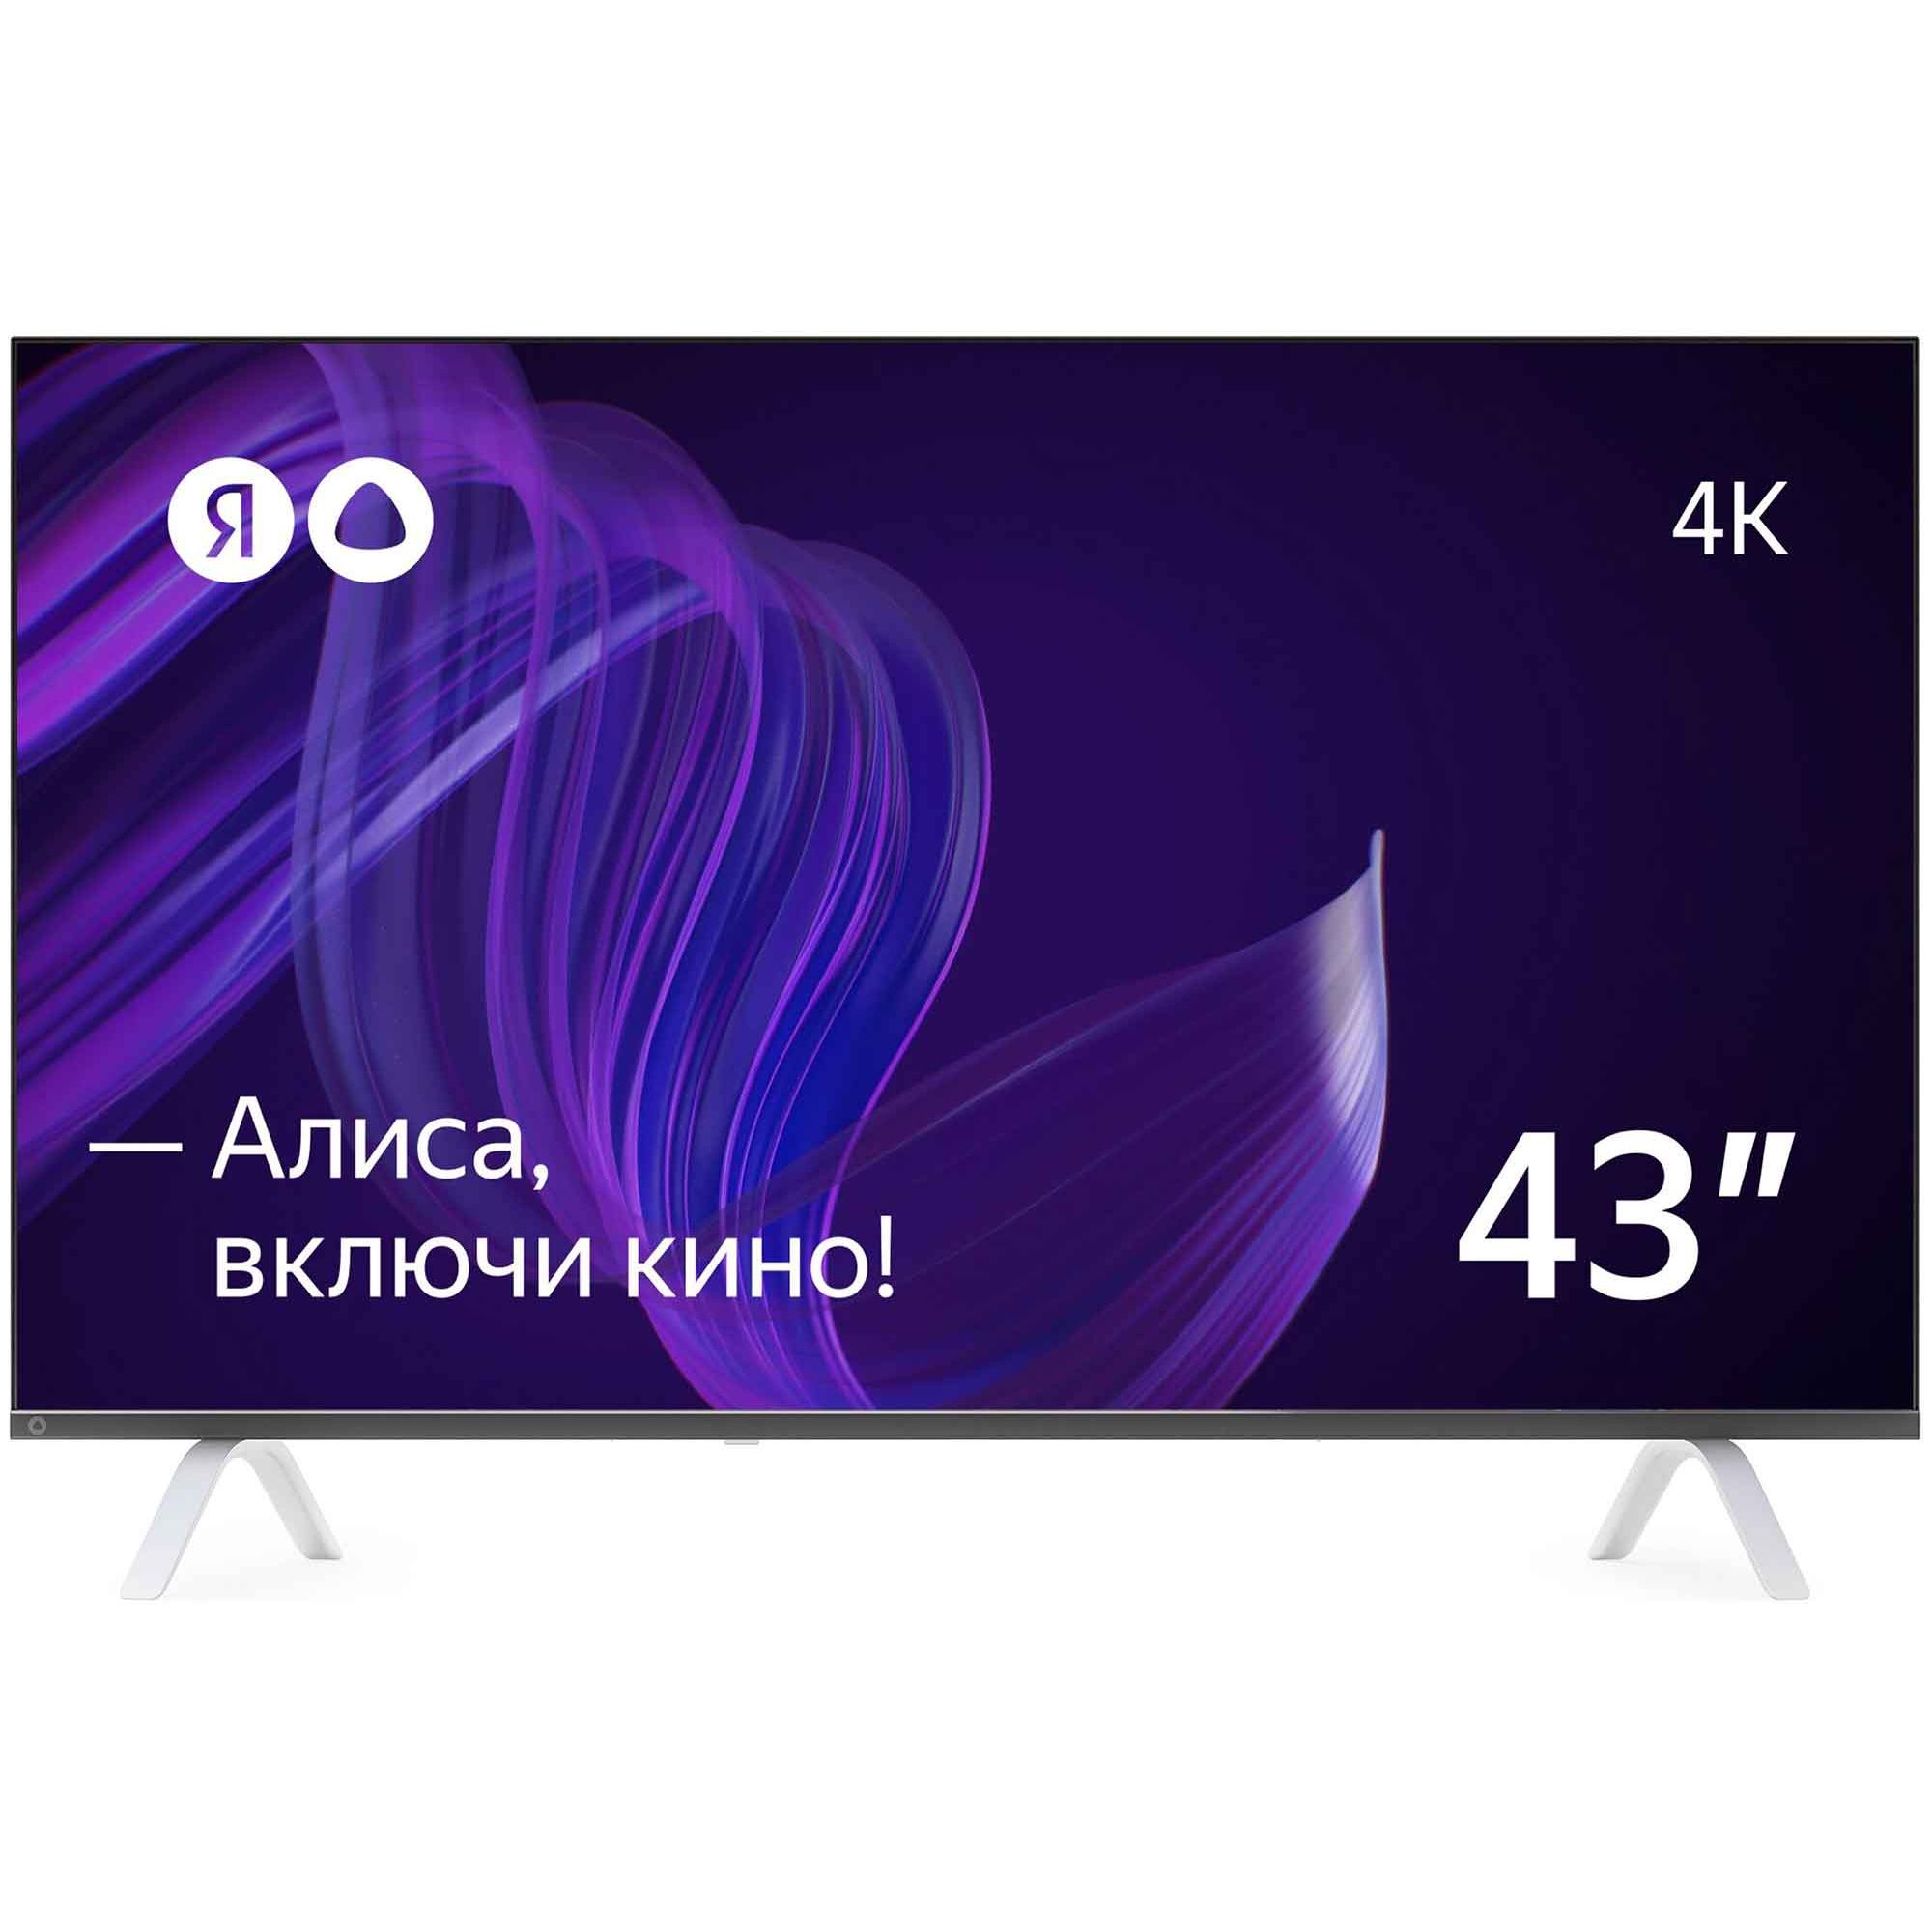 Телевизор Яндекс 43 YNDX-00071 YANDEX цена и фото